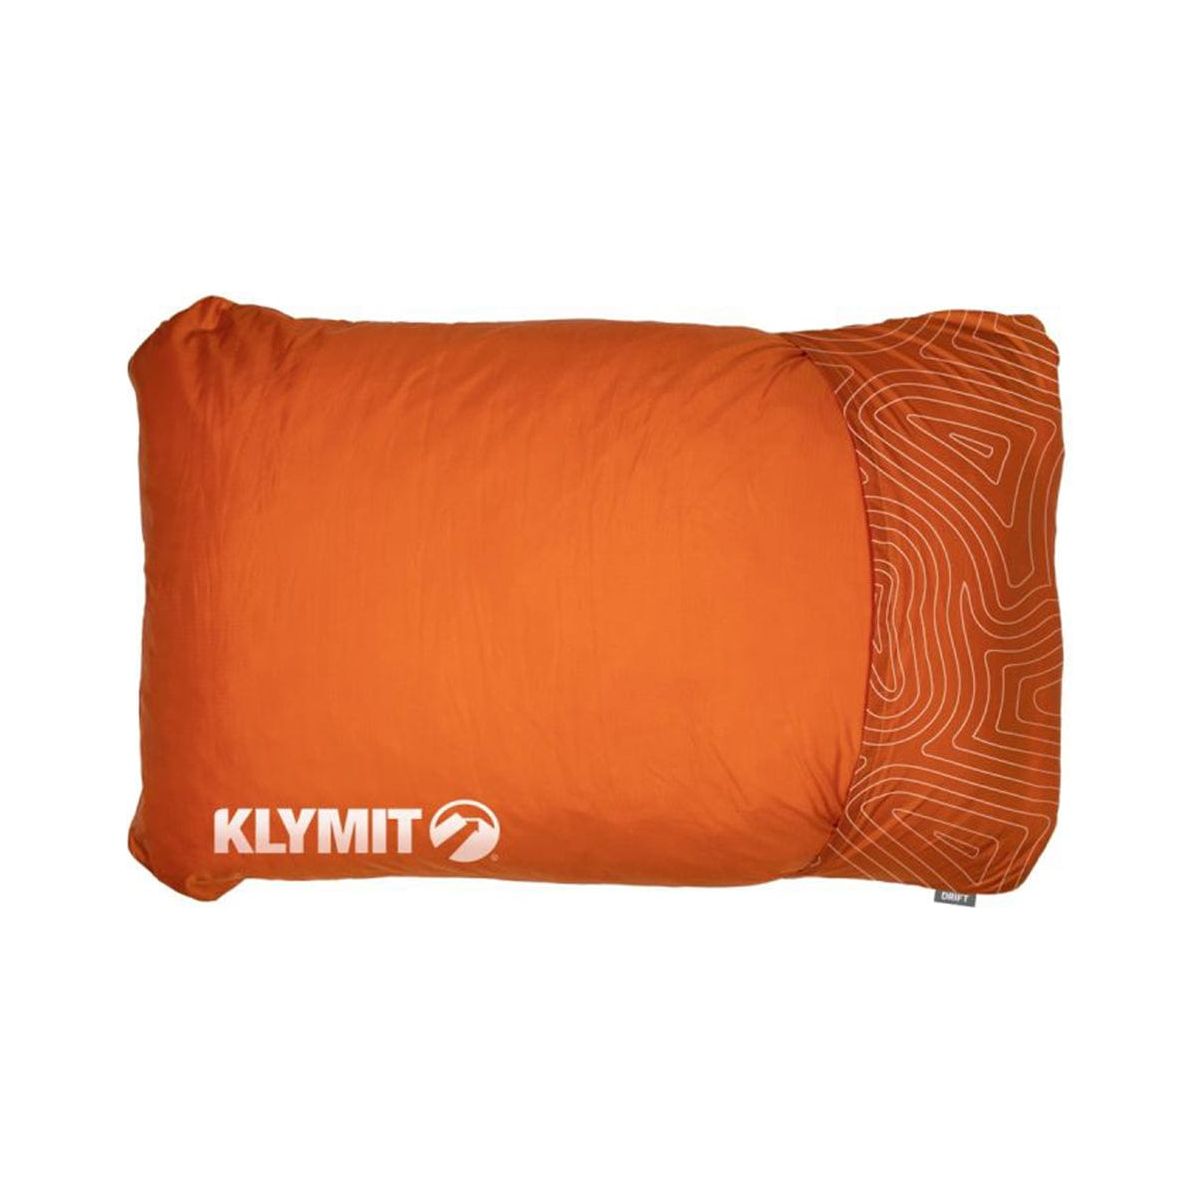 Klymit Orange - Large Drift Camp Pillow by Klymit